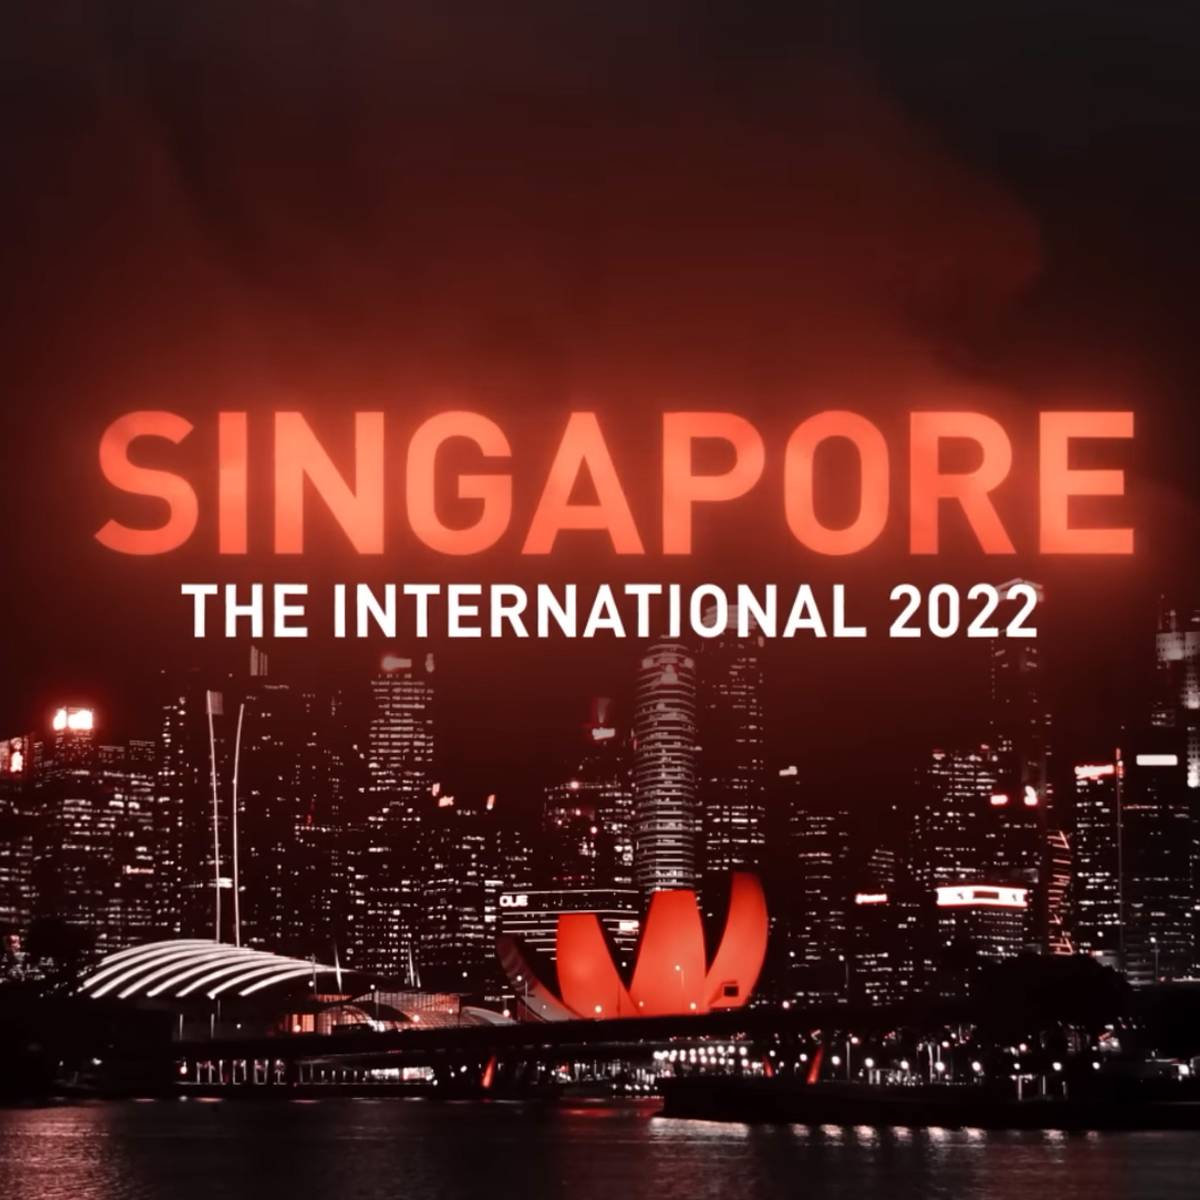 Das wichtigste Event des Dota 2 Kalenders hat einen Austragungsort bekommen: Singapur wird im Oktober Gastgeber des lukrativsten eSports-Events werden - alle Infos und erste Bilder.